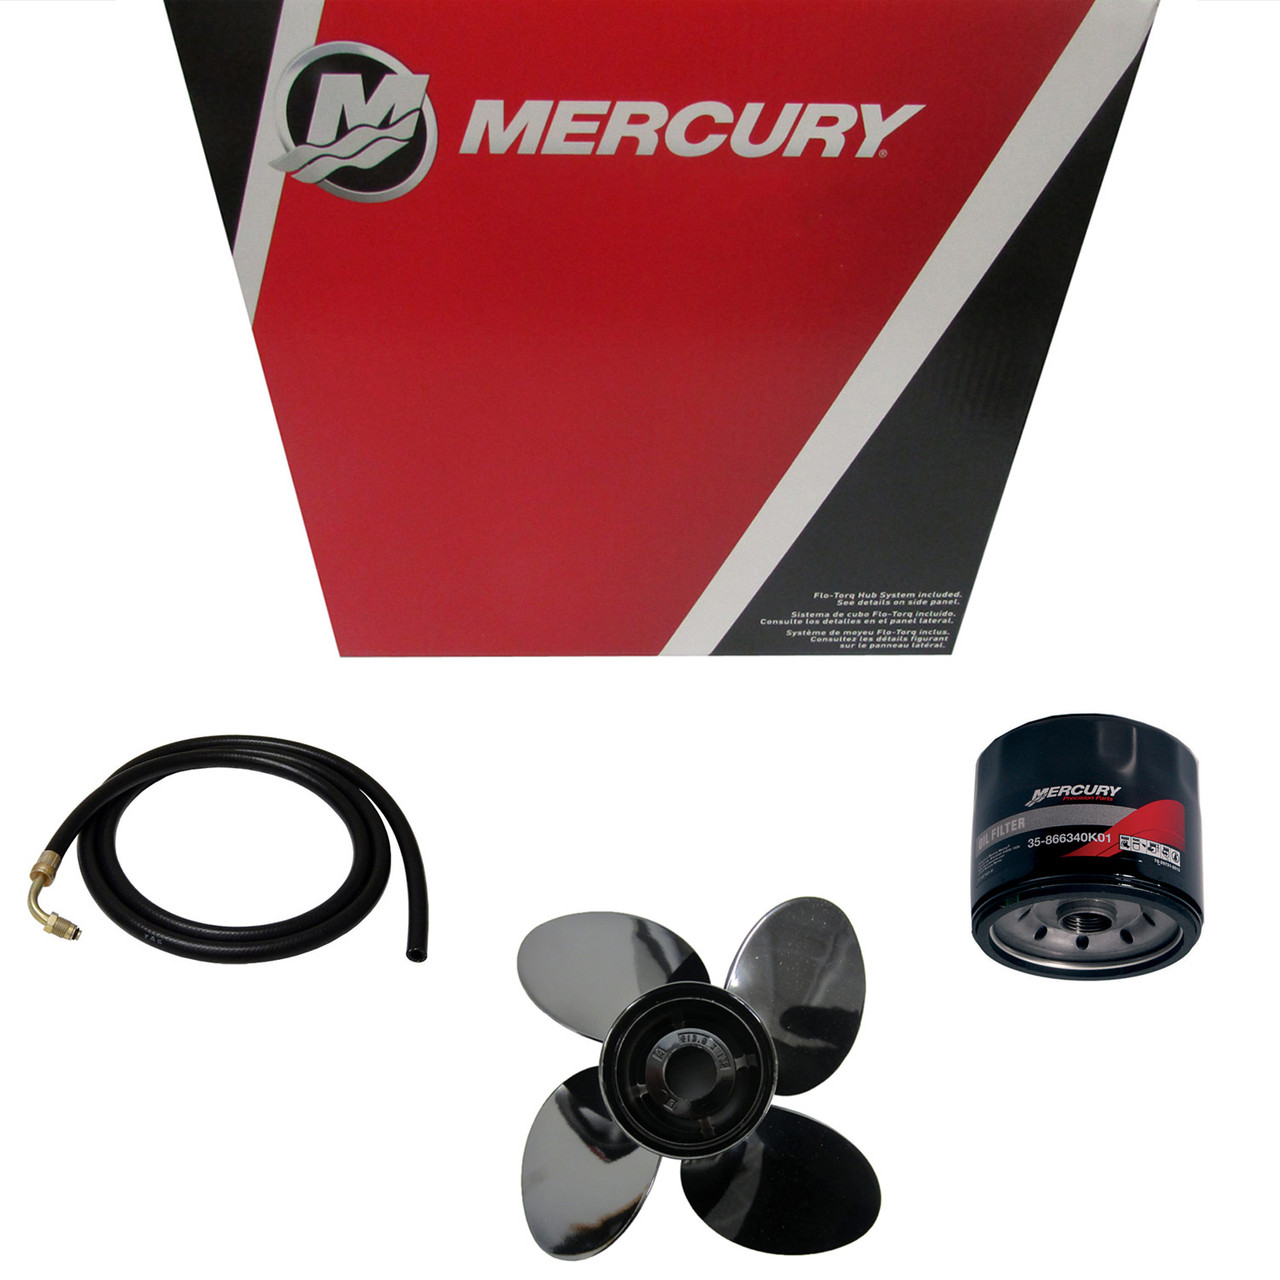 Mercury Marine / Mercruiser New OEM Fitting-Tee, 892521